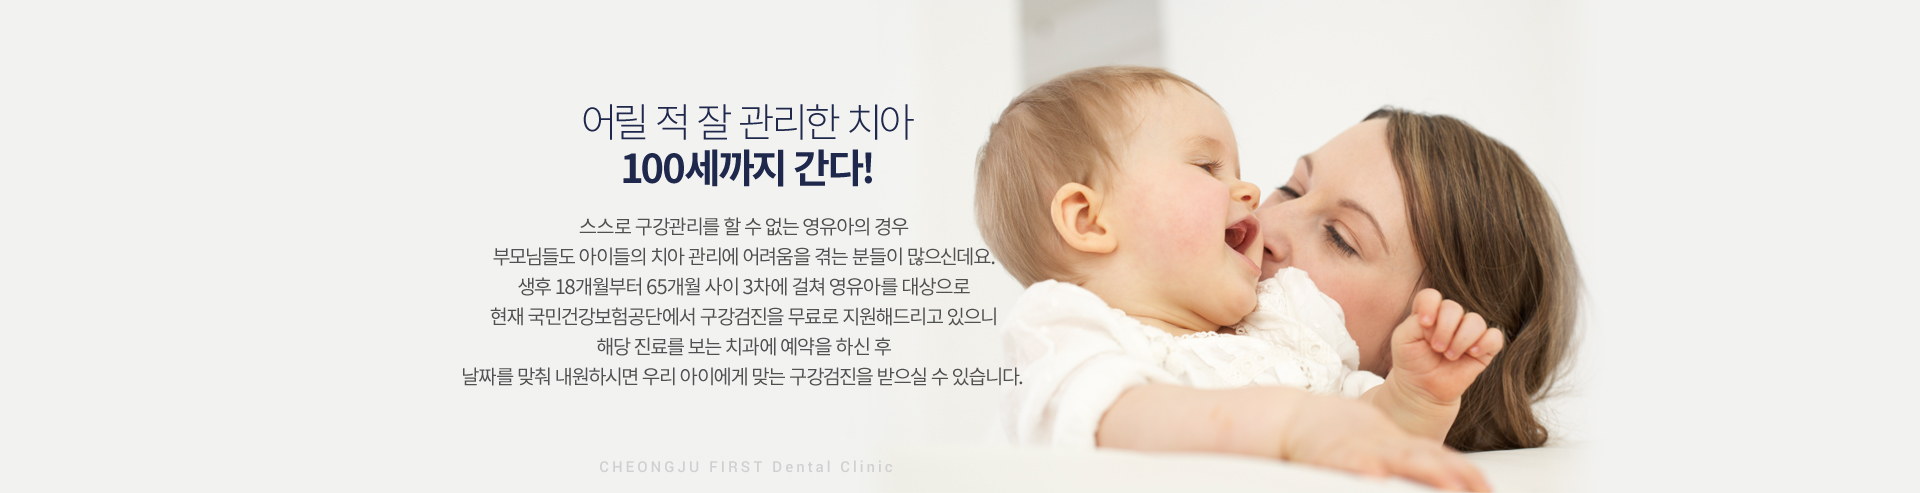 영유아 구강검진